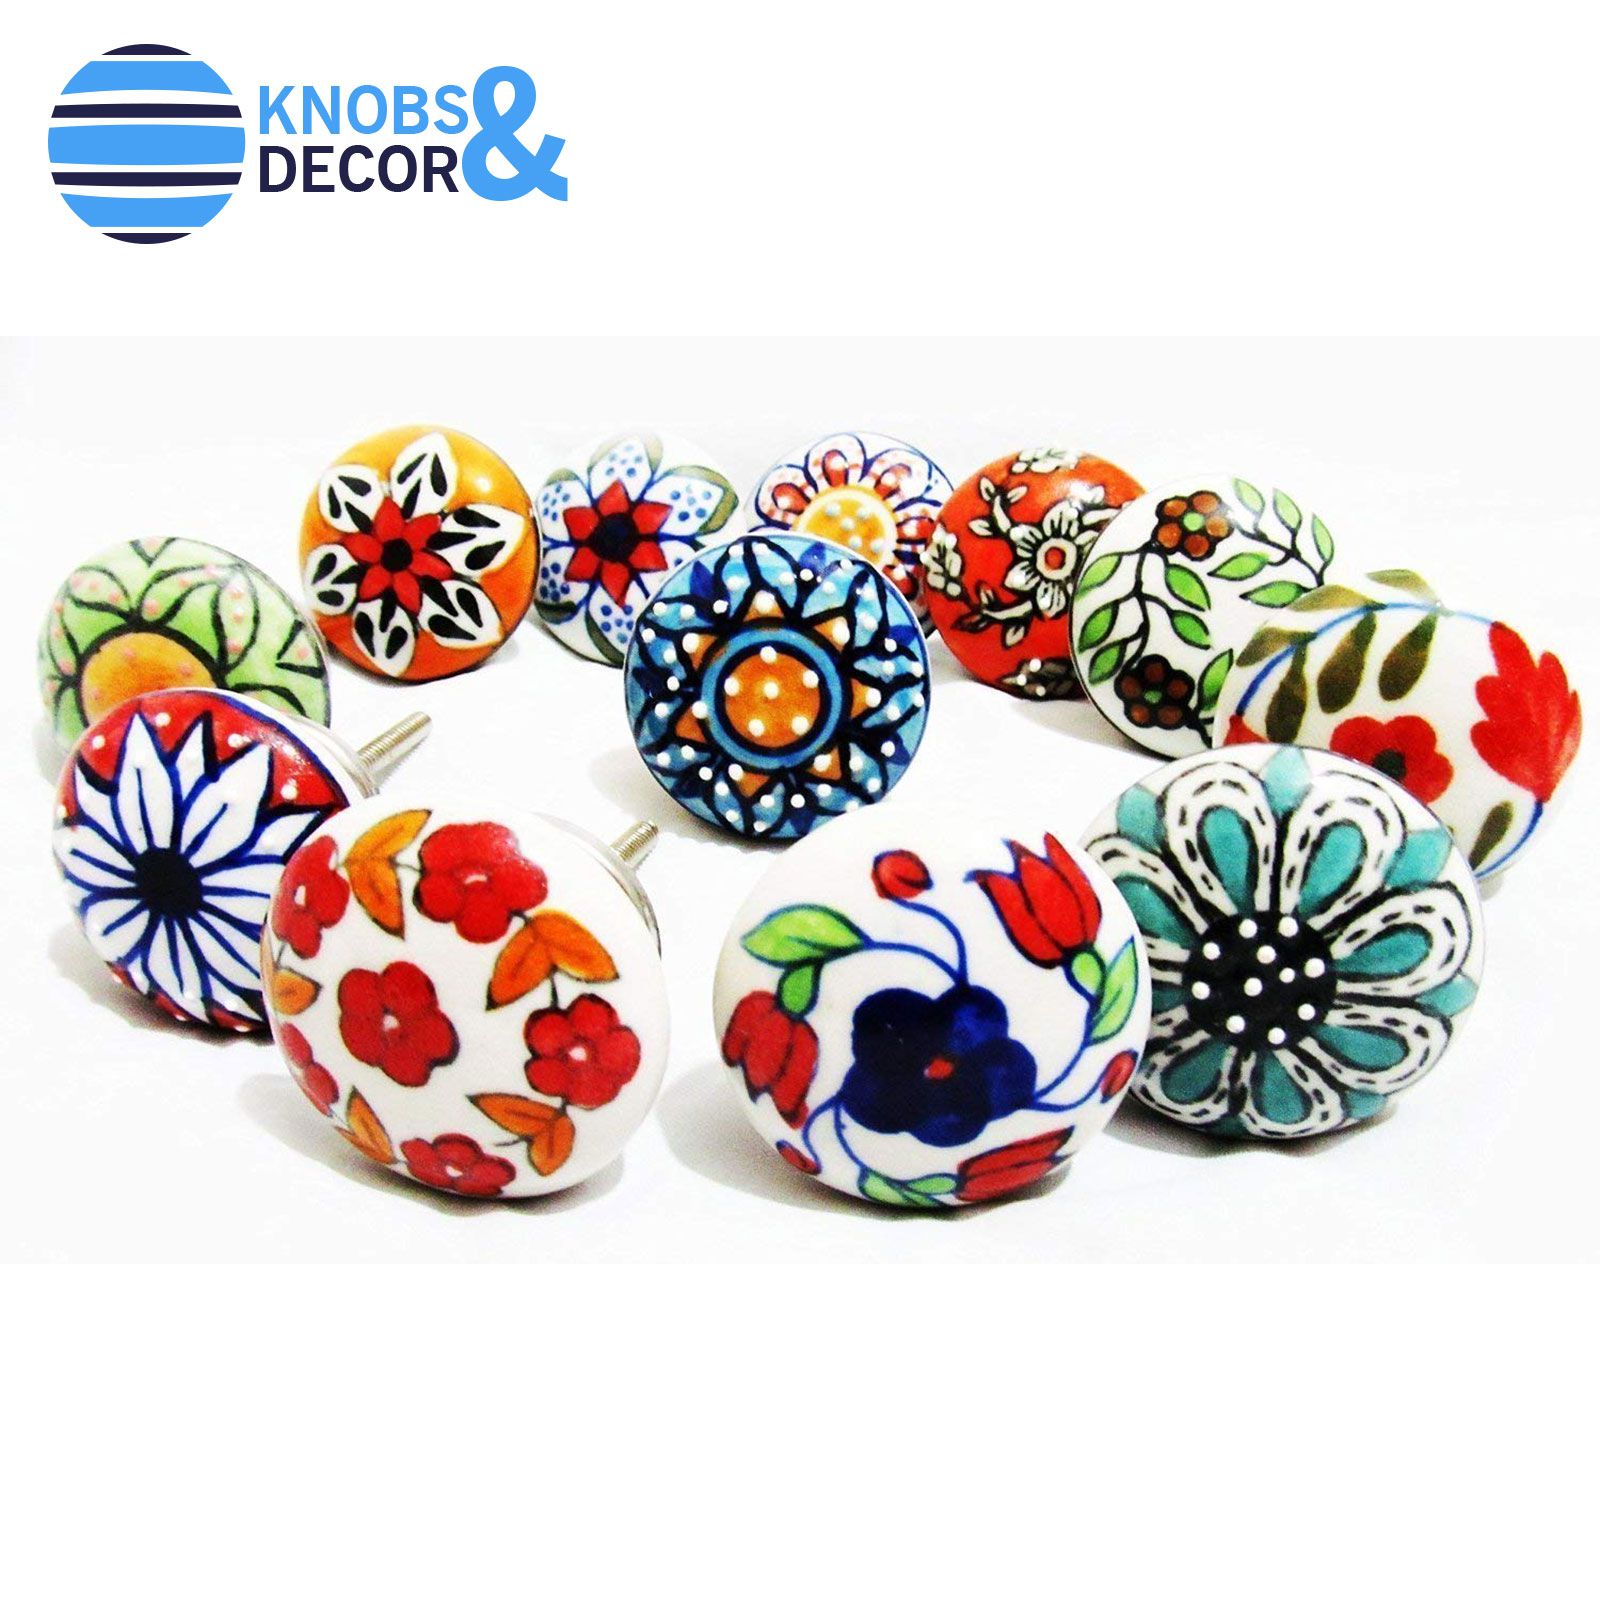 Assorted Multicolor Ceramic Drawers Knobs SDL641965210 1 786e1 